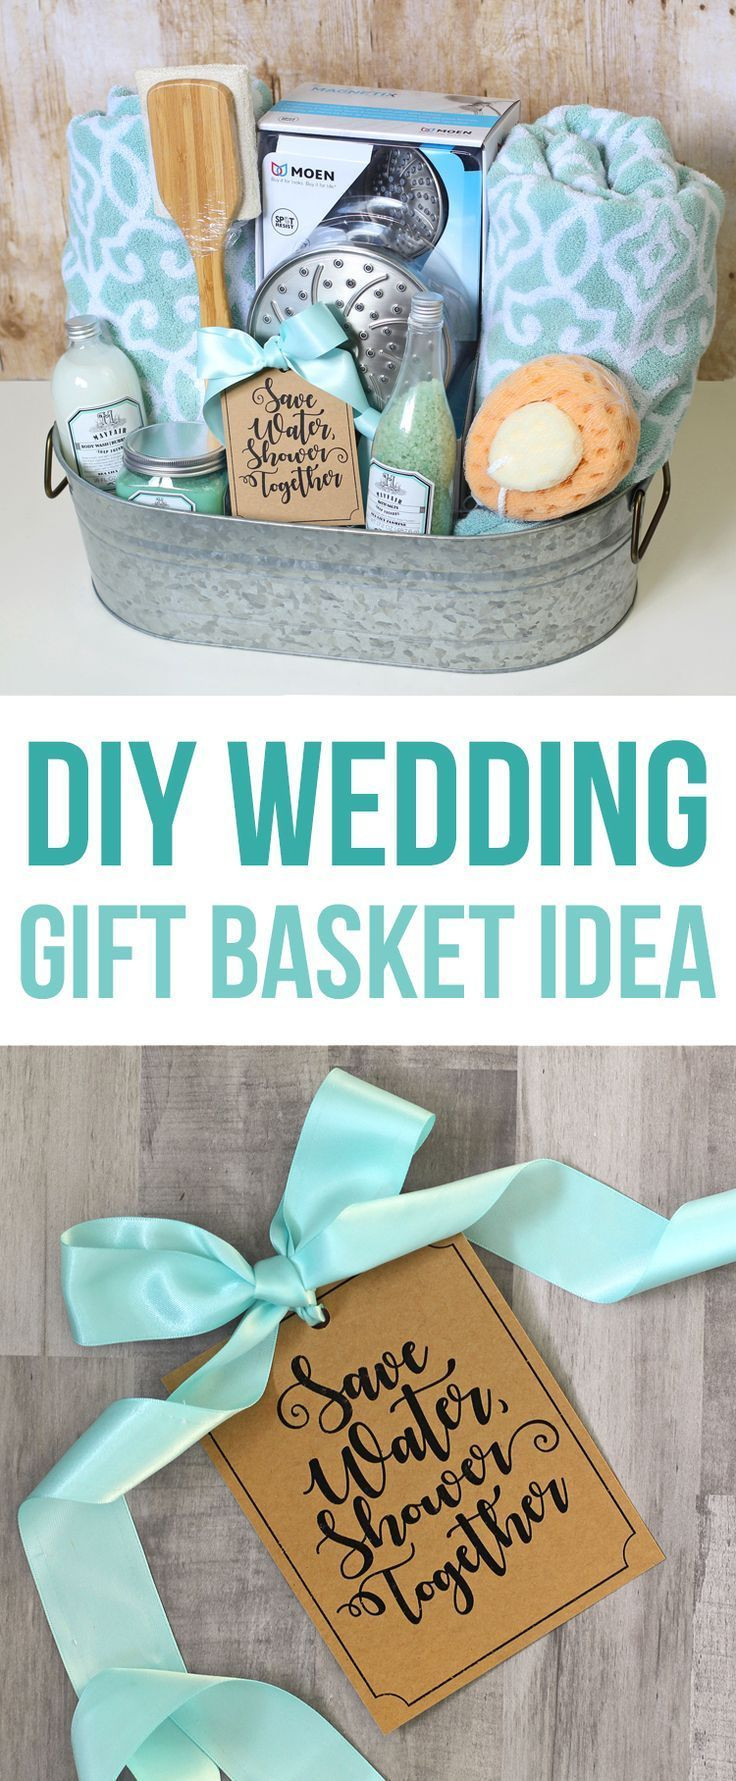 DIY Wedding Presents
 Shower Themed DIY Wedding Gift Basket Idea